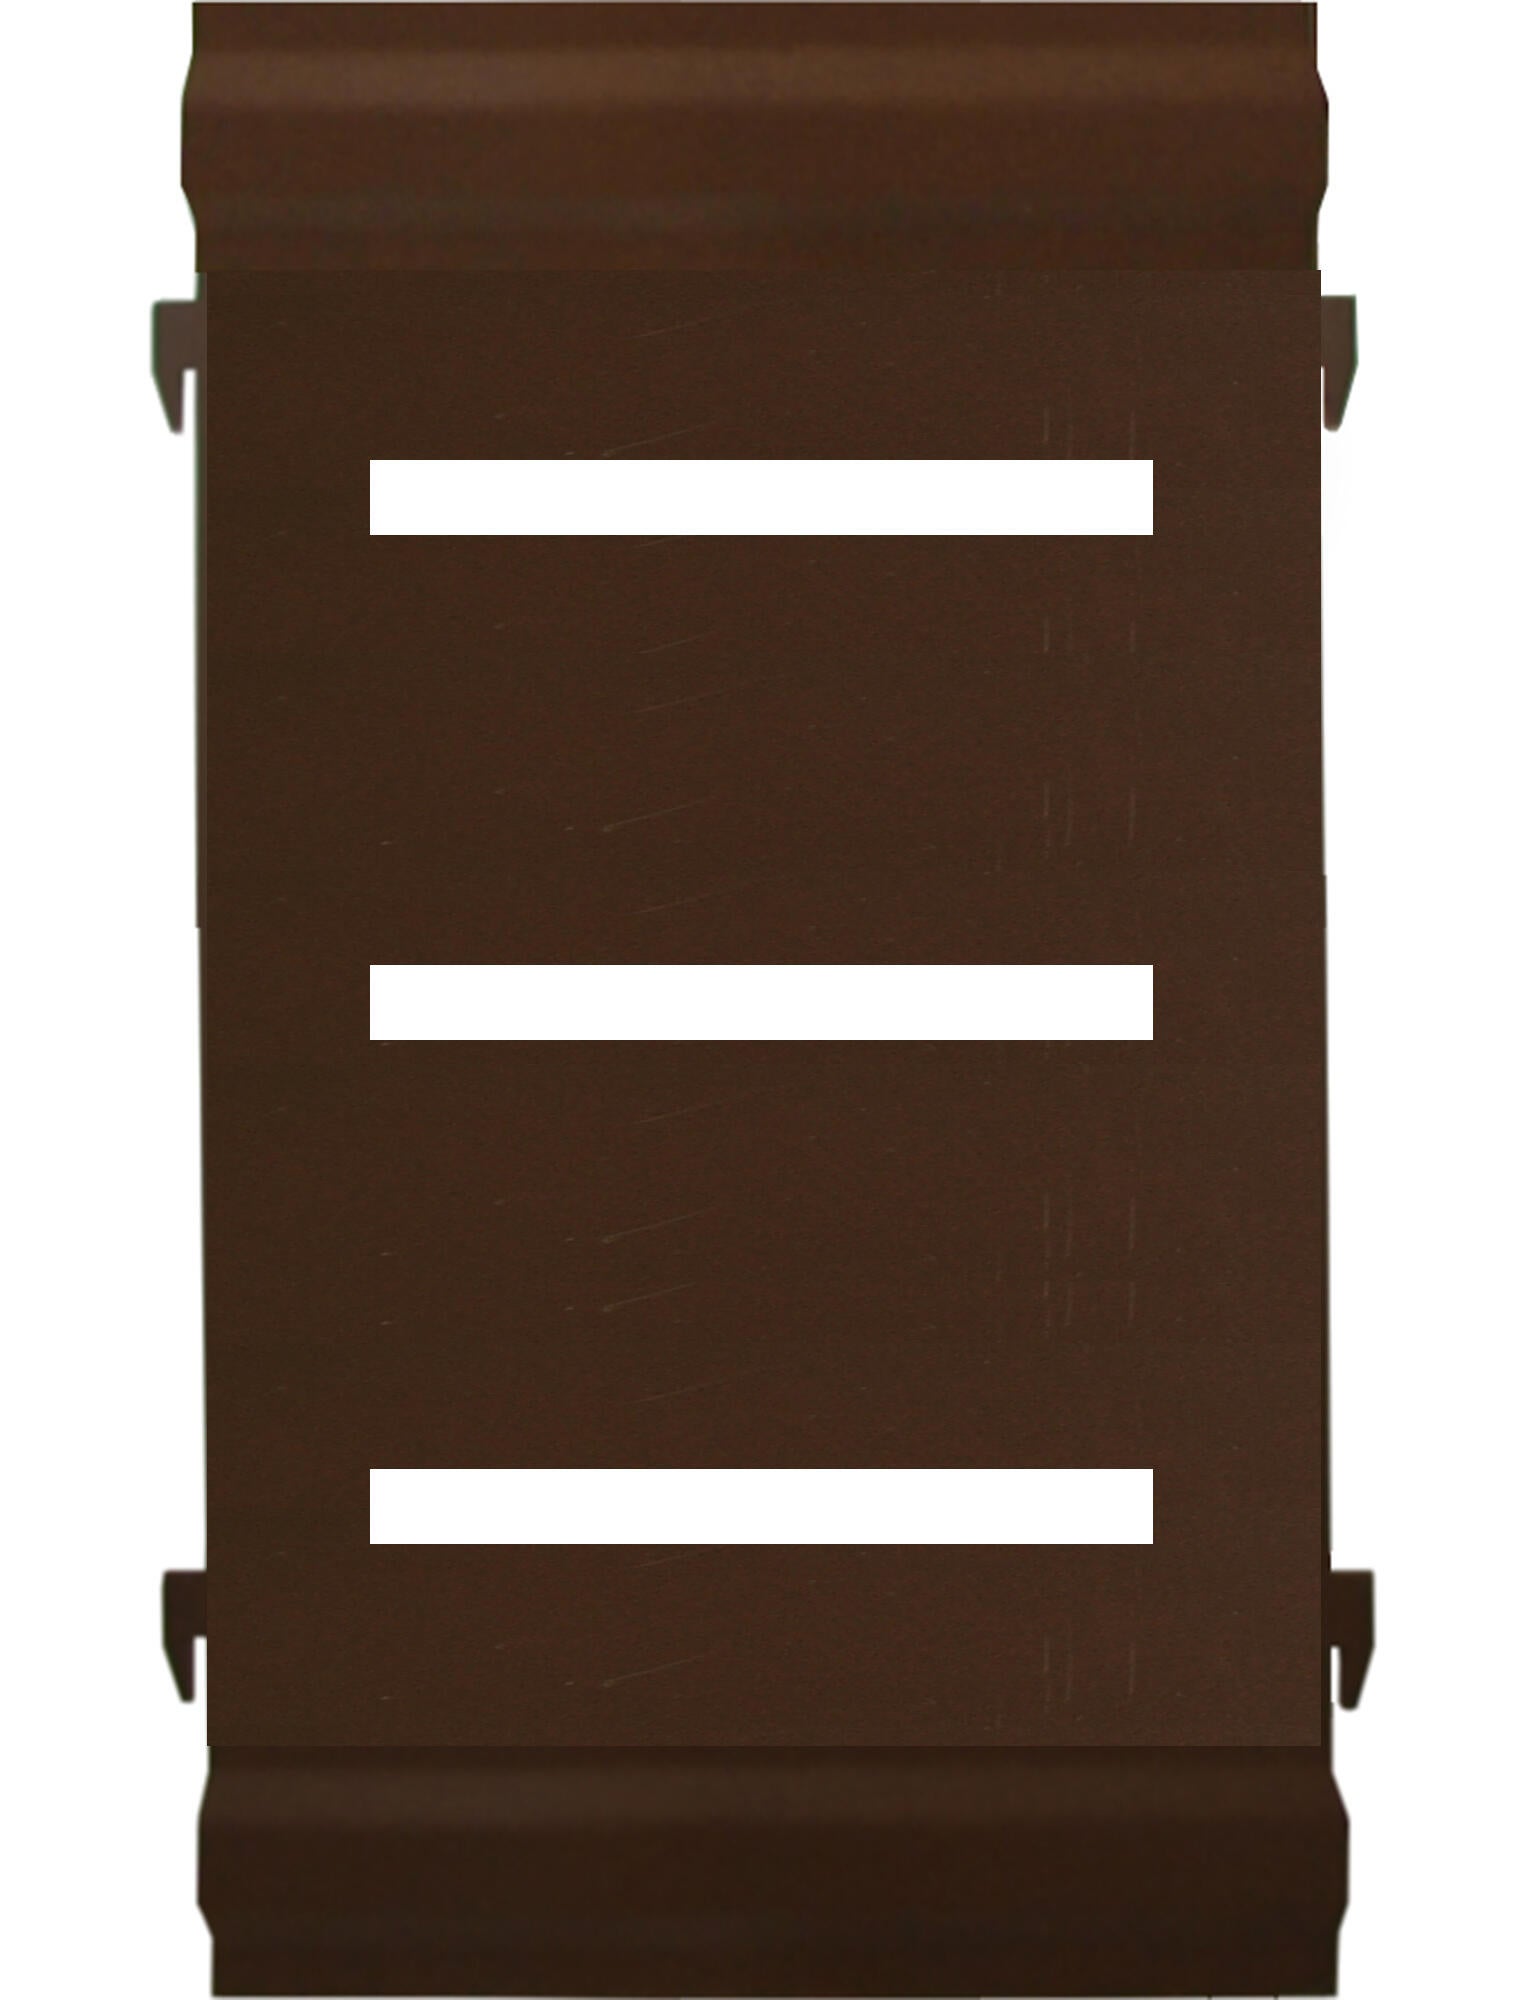 Panel remate valla acero galvanizado franja rayas marrón 44x24,5 cm